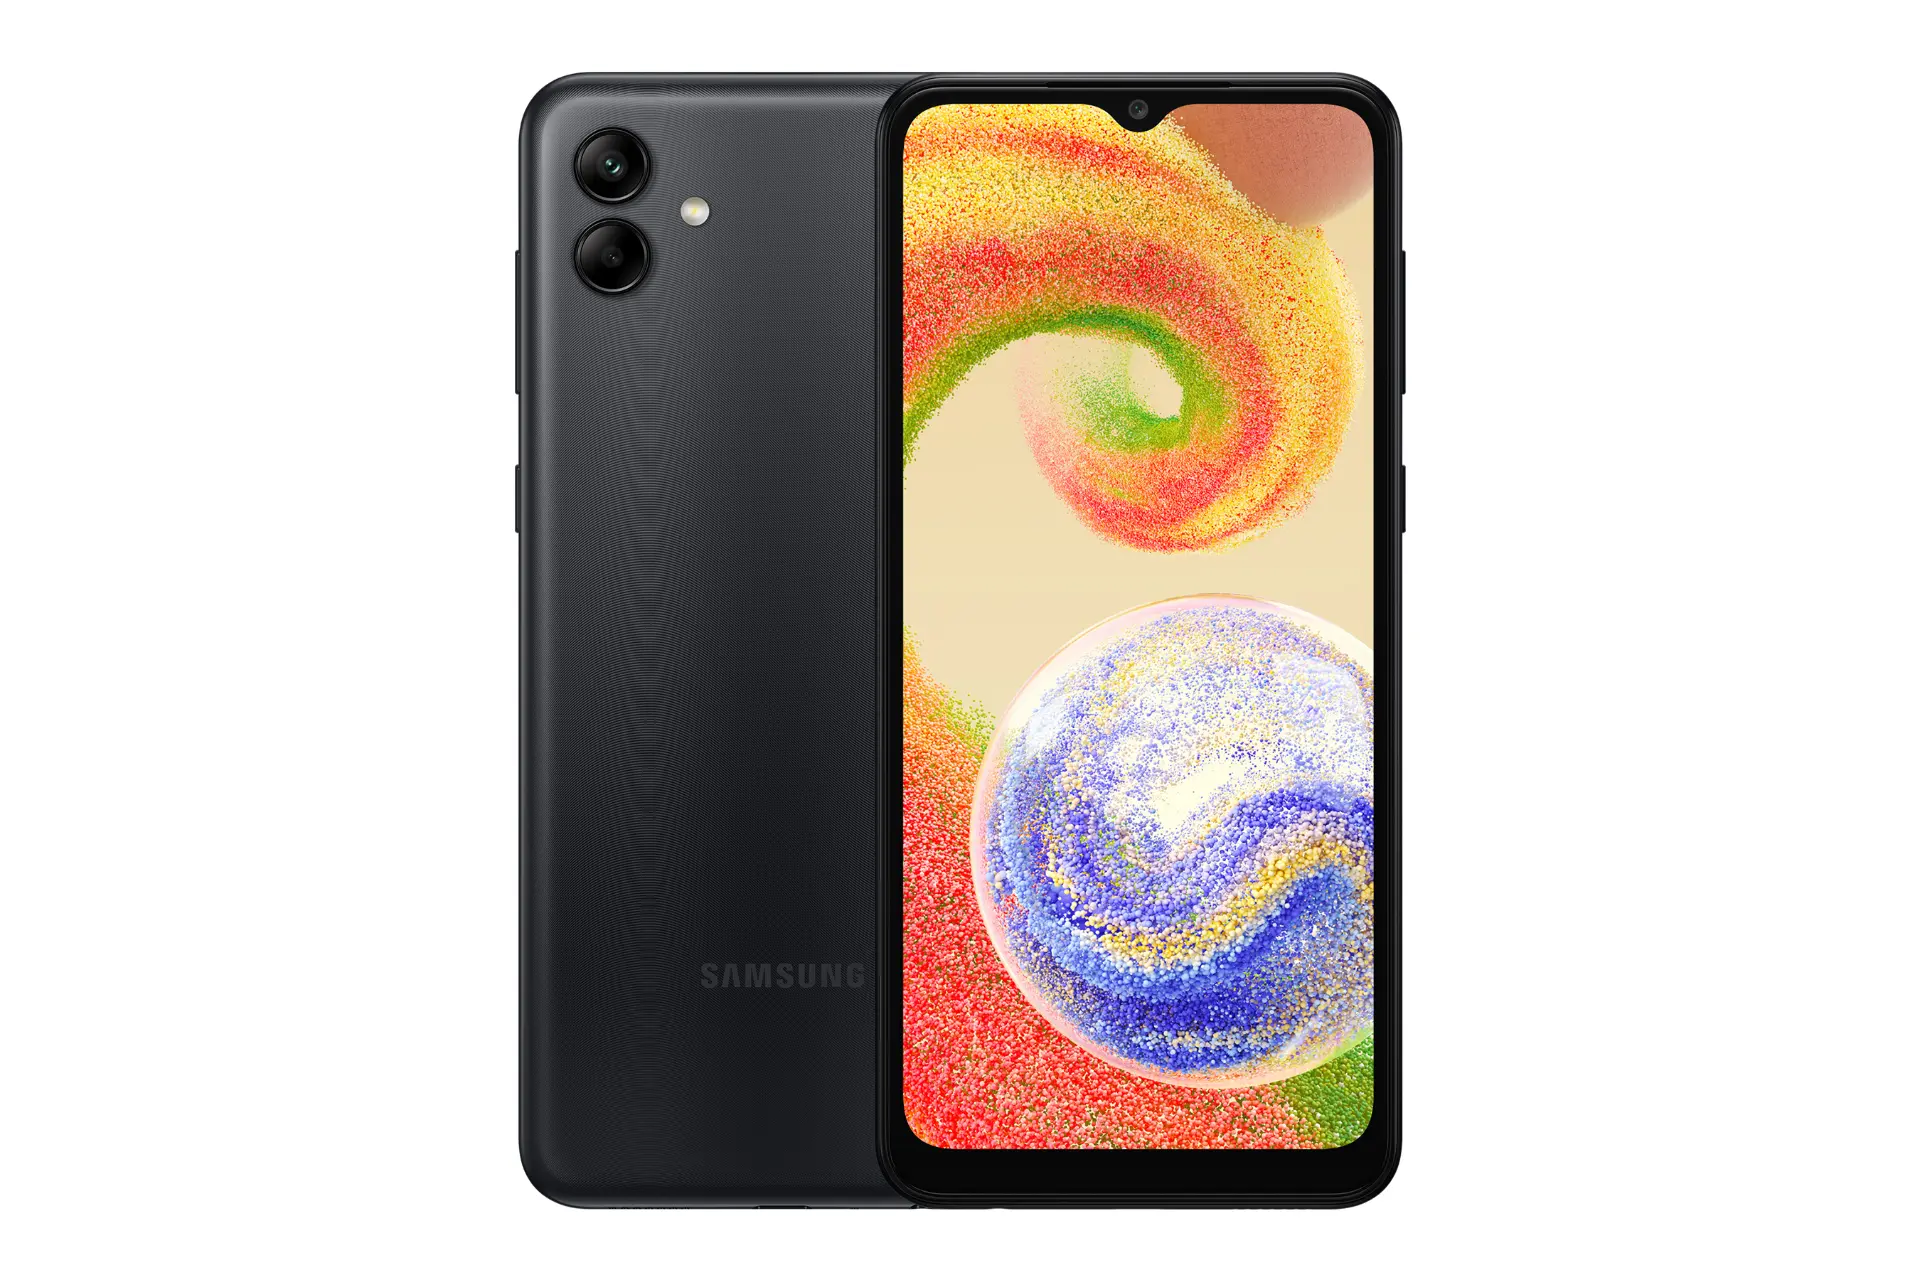 نمای کلی گوشی موبایل گلکسی A04 سامسونگ / Samsung Galaxy A04 با نمایشگر روشن و نمایش لوگو و دوربین رنگ مشکی